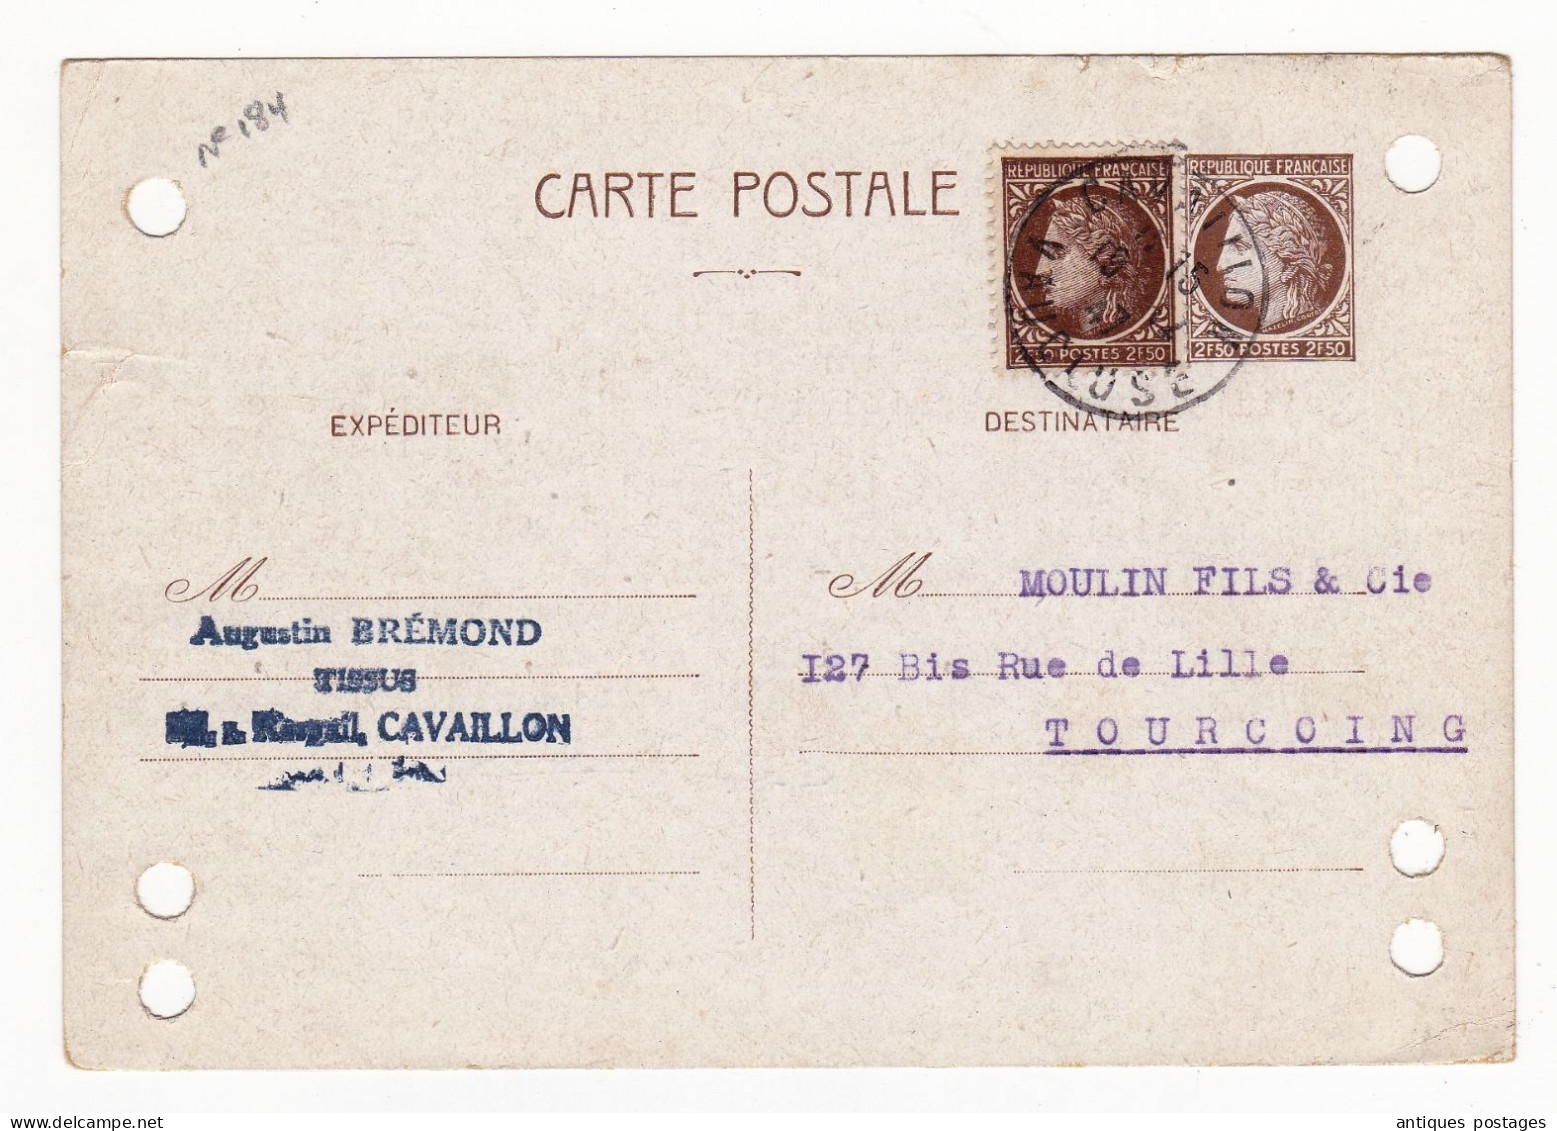 Entier Postal 1947 Cérès De Mazelin Cavaillon Vaucluse Tourcoing Moulin Fils & Cie Tissus - 1945-47 Ceres De Mazelin